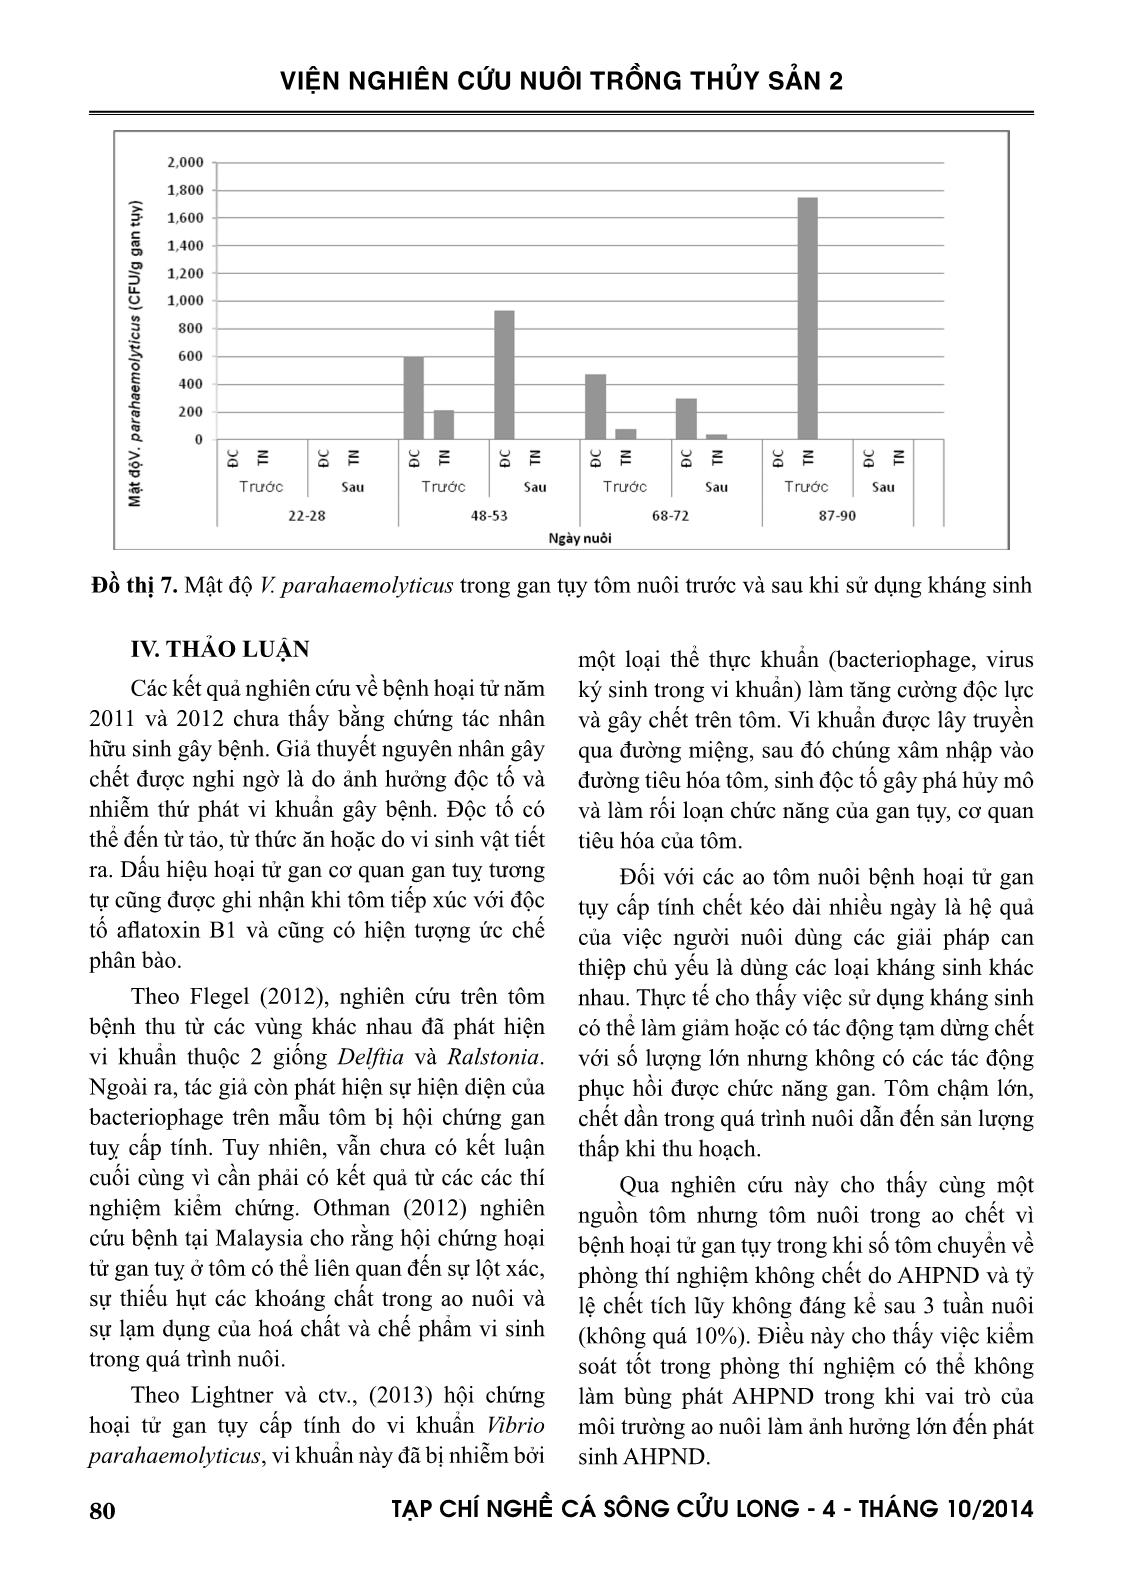 Một số kết quả về nghiên cứu bệnh hoại tử gan tụy cấp tính trên tôm nuôi ở đồng bằng sông Cửu Long và biện pháp kiểm soát trang 8